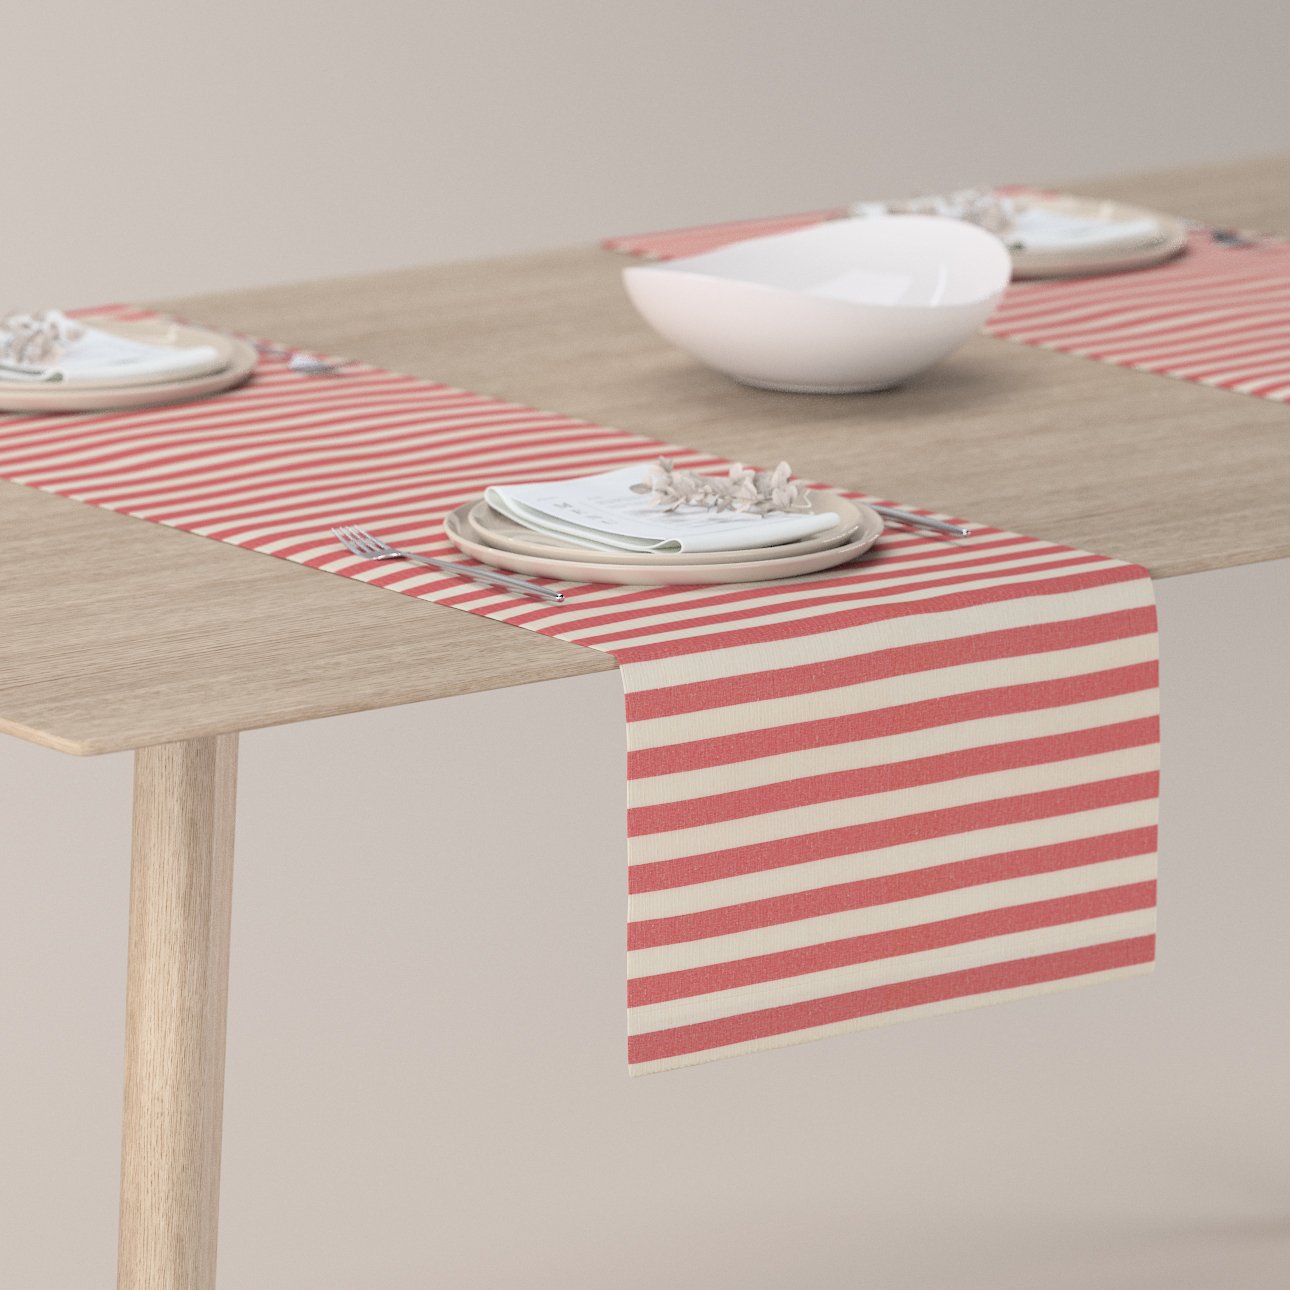 E-shop Dekoria Štóla na stôl, červeno-biele prúžky, 40 x 130 cm, Quadro, 136-17